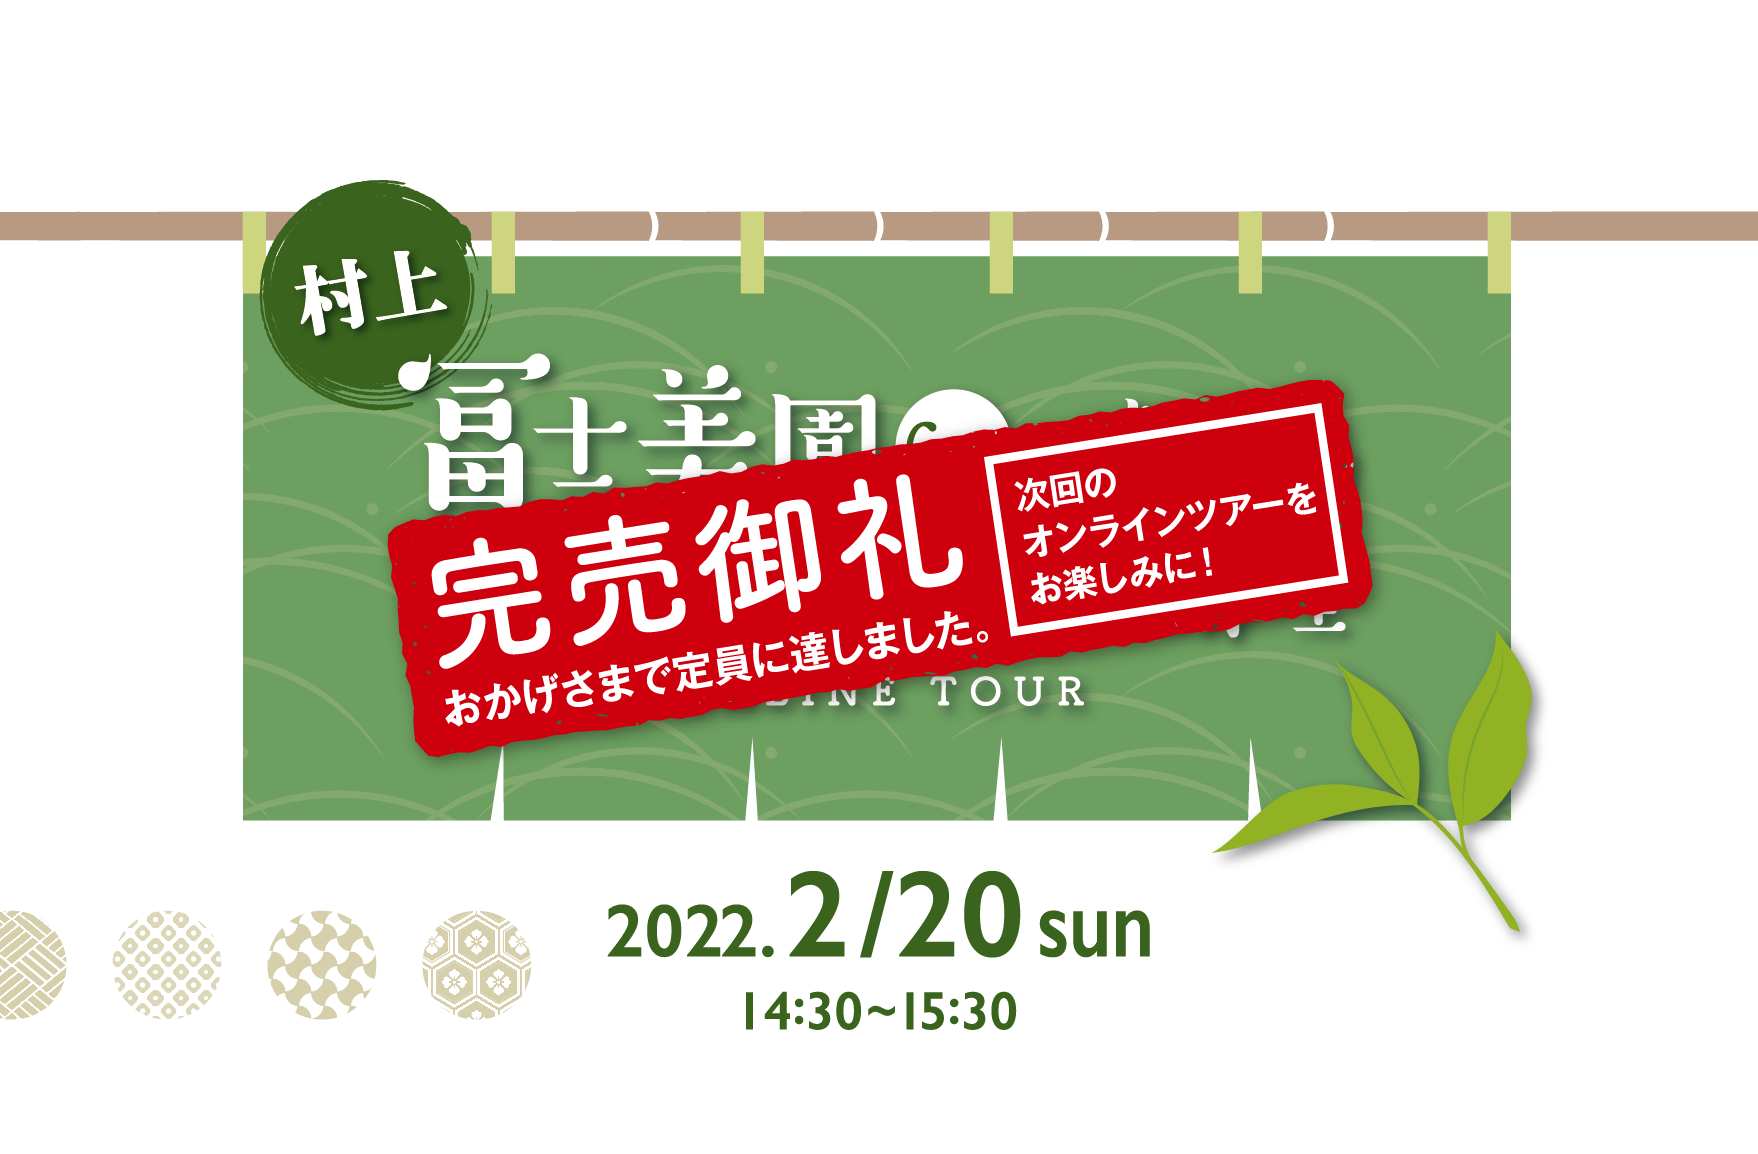 村上 冨士美園6代目が教えるお茶の魅力と淹れ方講座 ONLINE TOUR